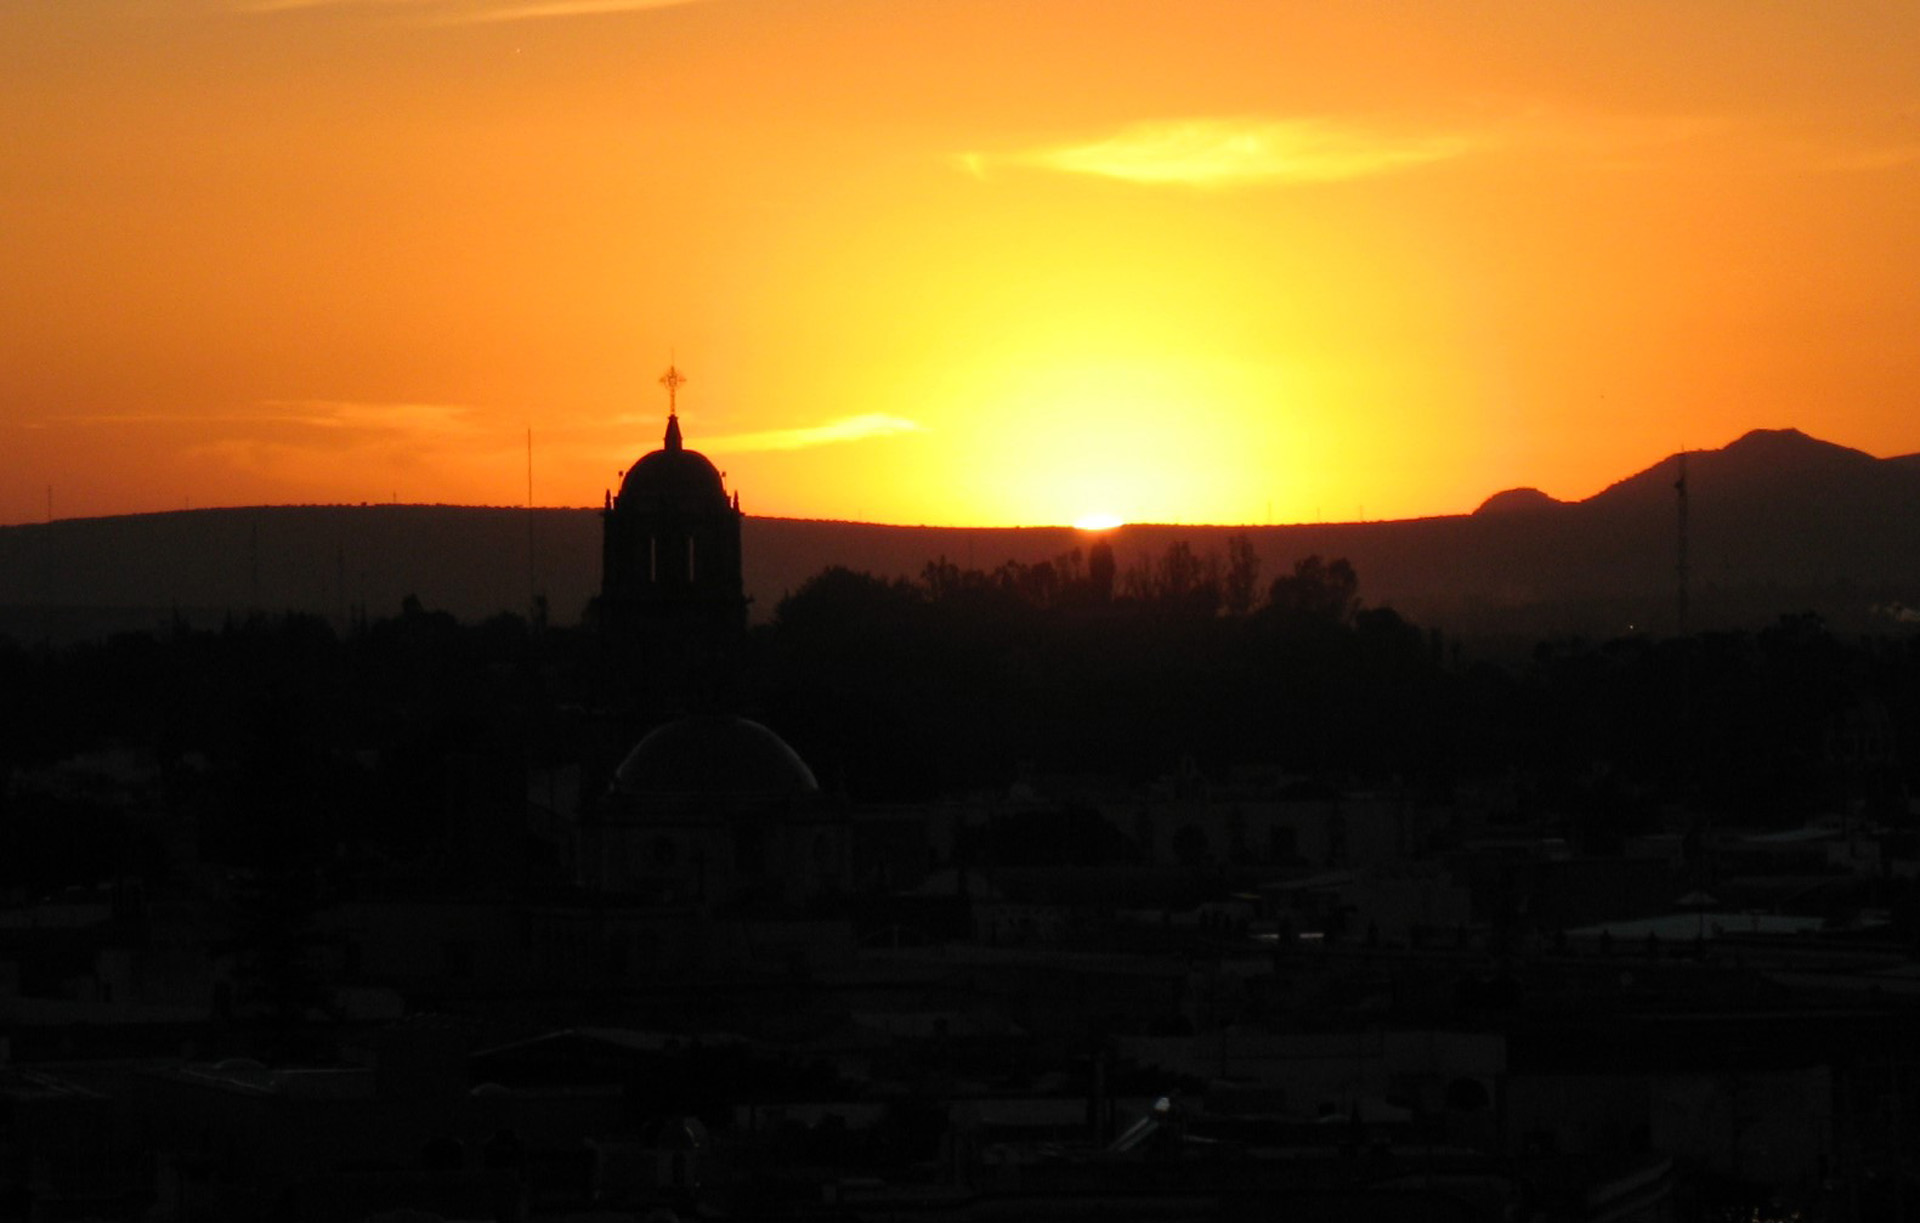 Figura 4. Ocaso solar sobre el monumento a Benito Juárez, el día 22 de septiembre de 2007, día del equinoccio astronómico, observada desde la cima del templo de La Cruz. Fotografía de Francisco Granados Saucedo.